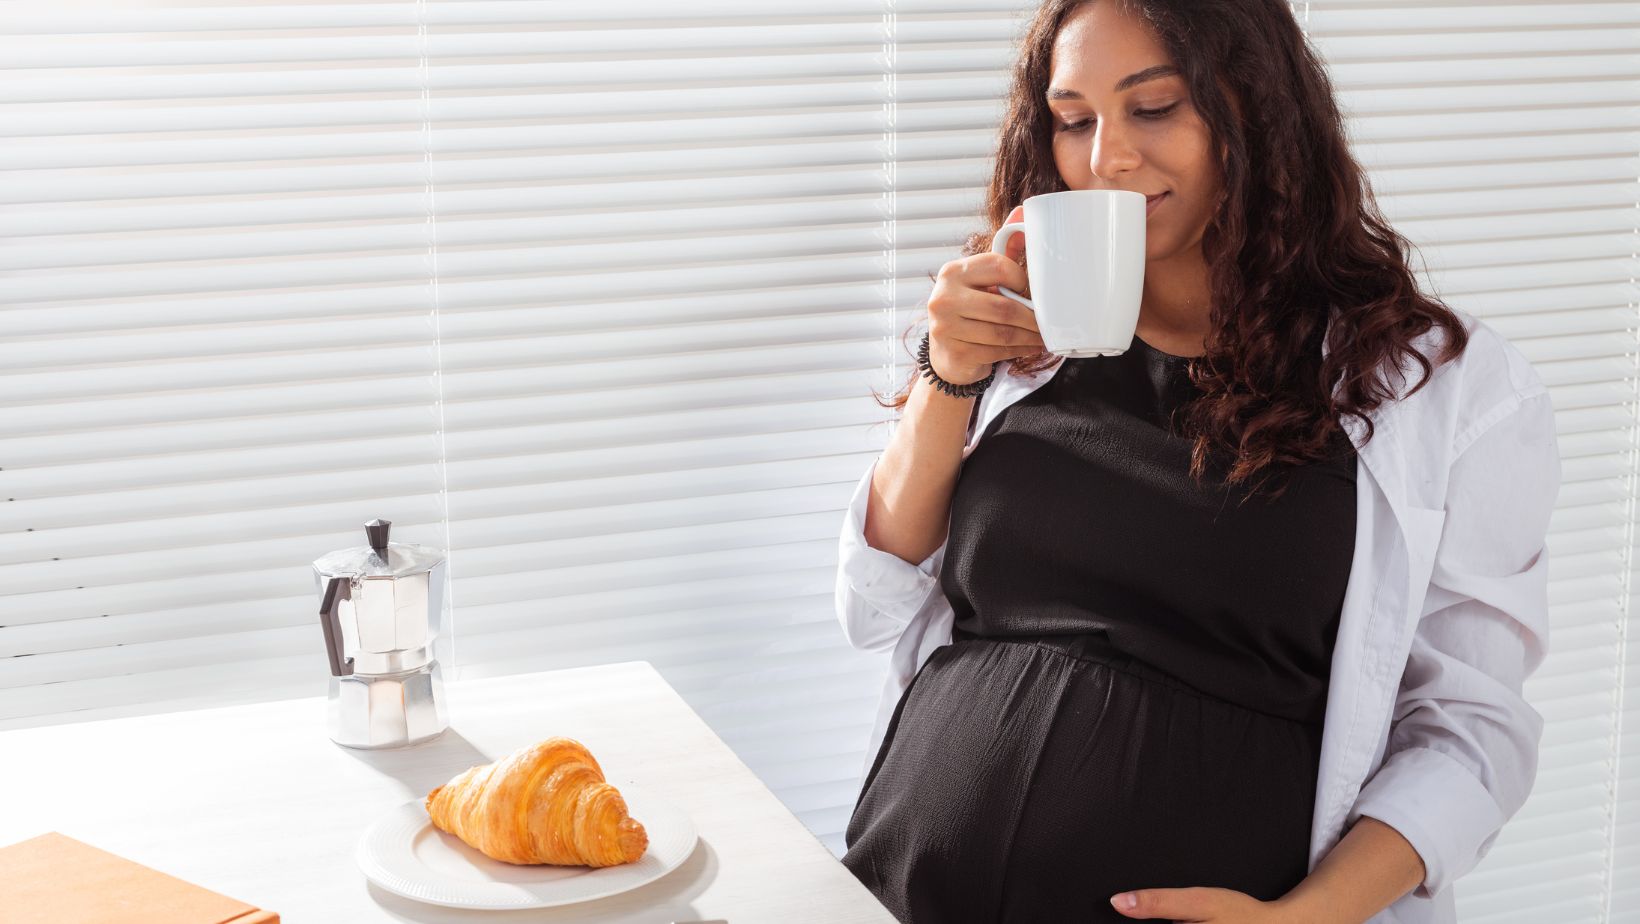 breakfast ideas for pregnancy